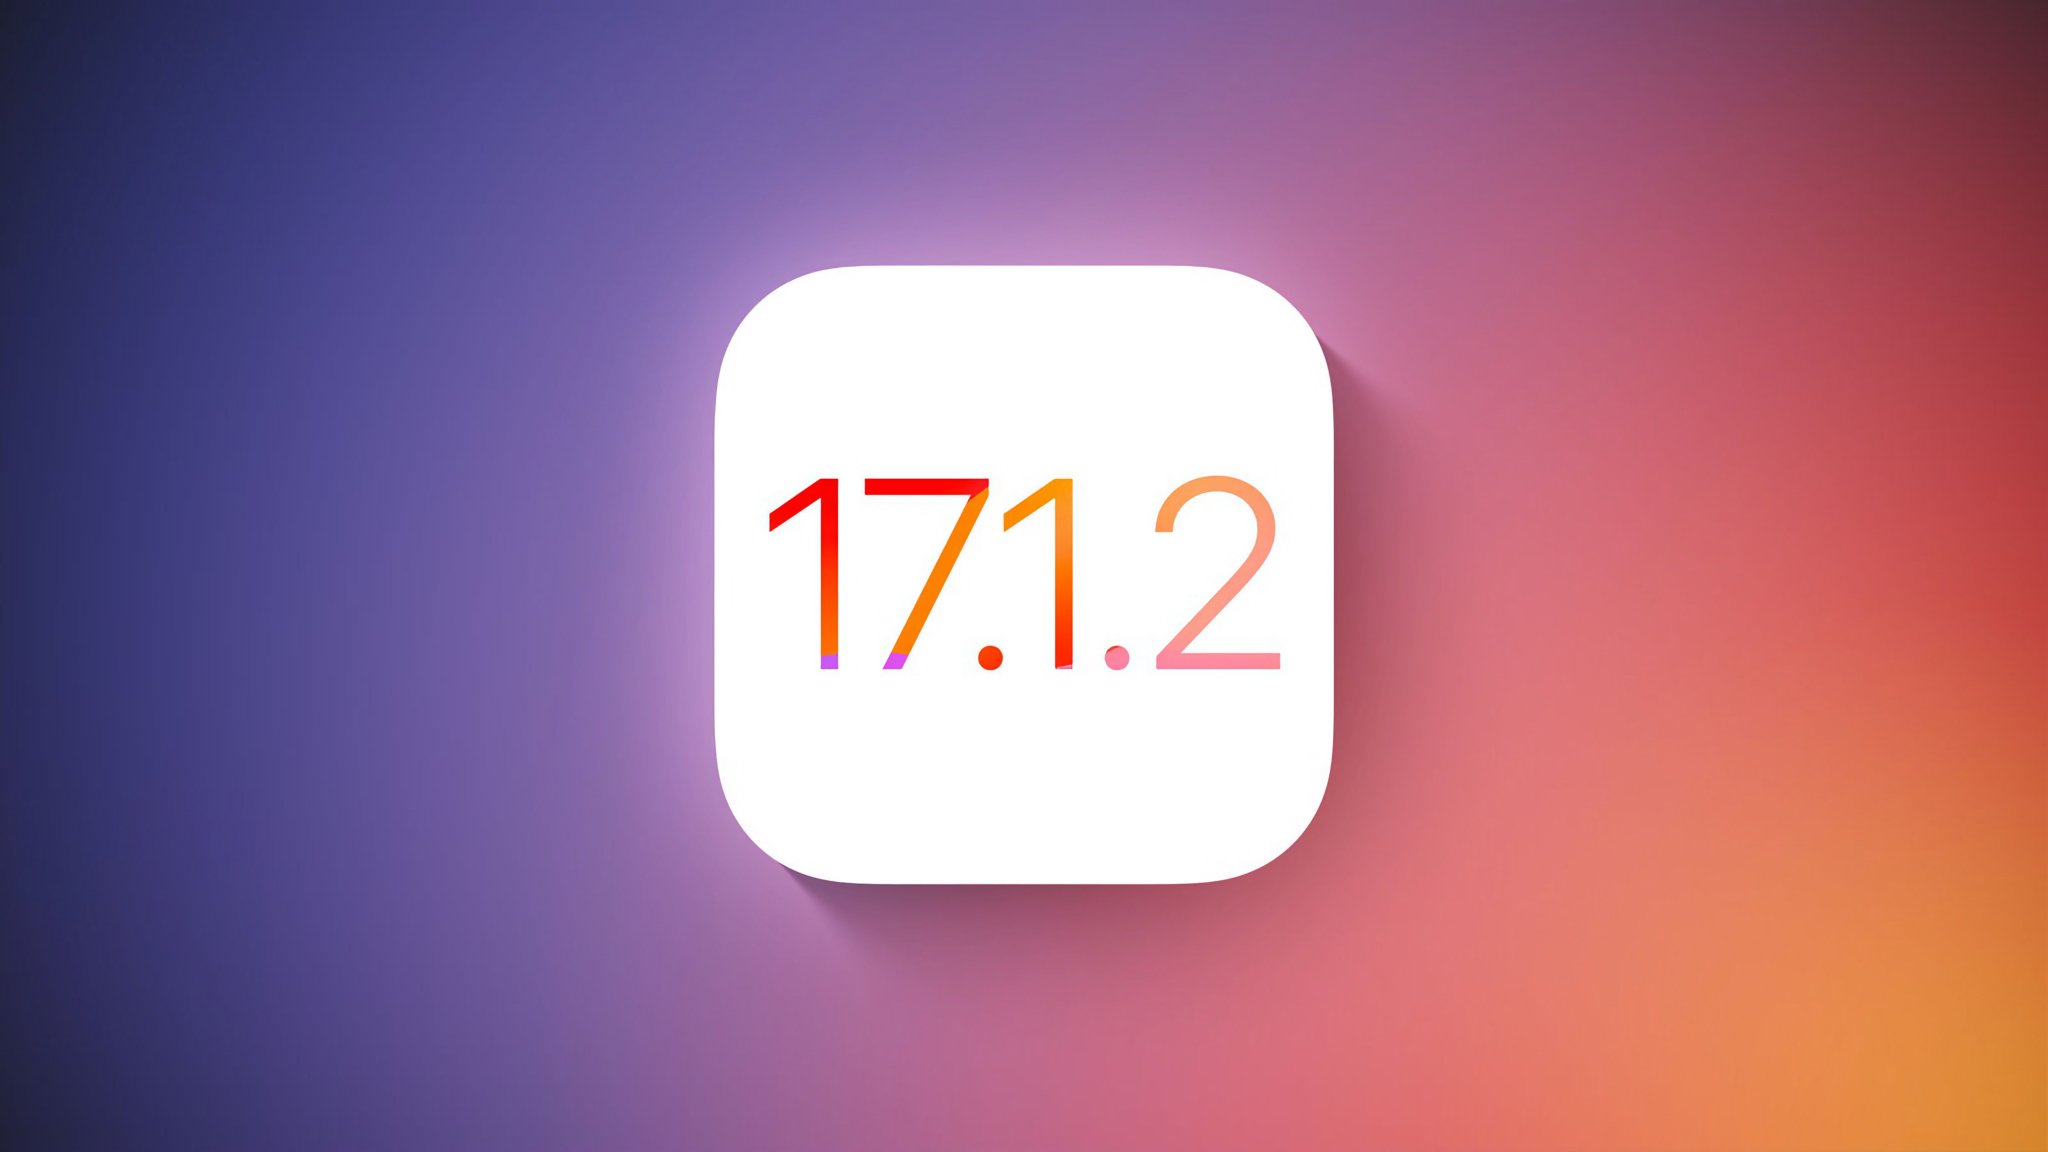 Apple phát hành iOS 17.1.2 để sửa lỗi bảo mật